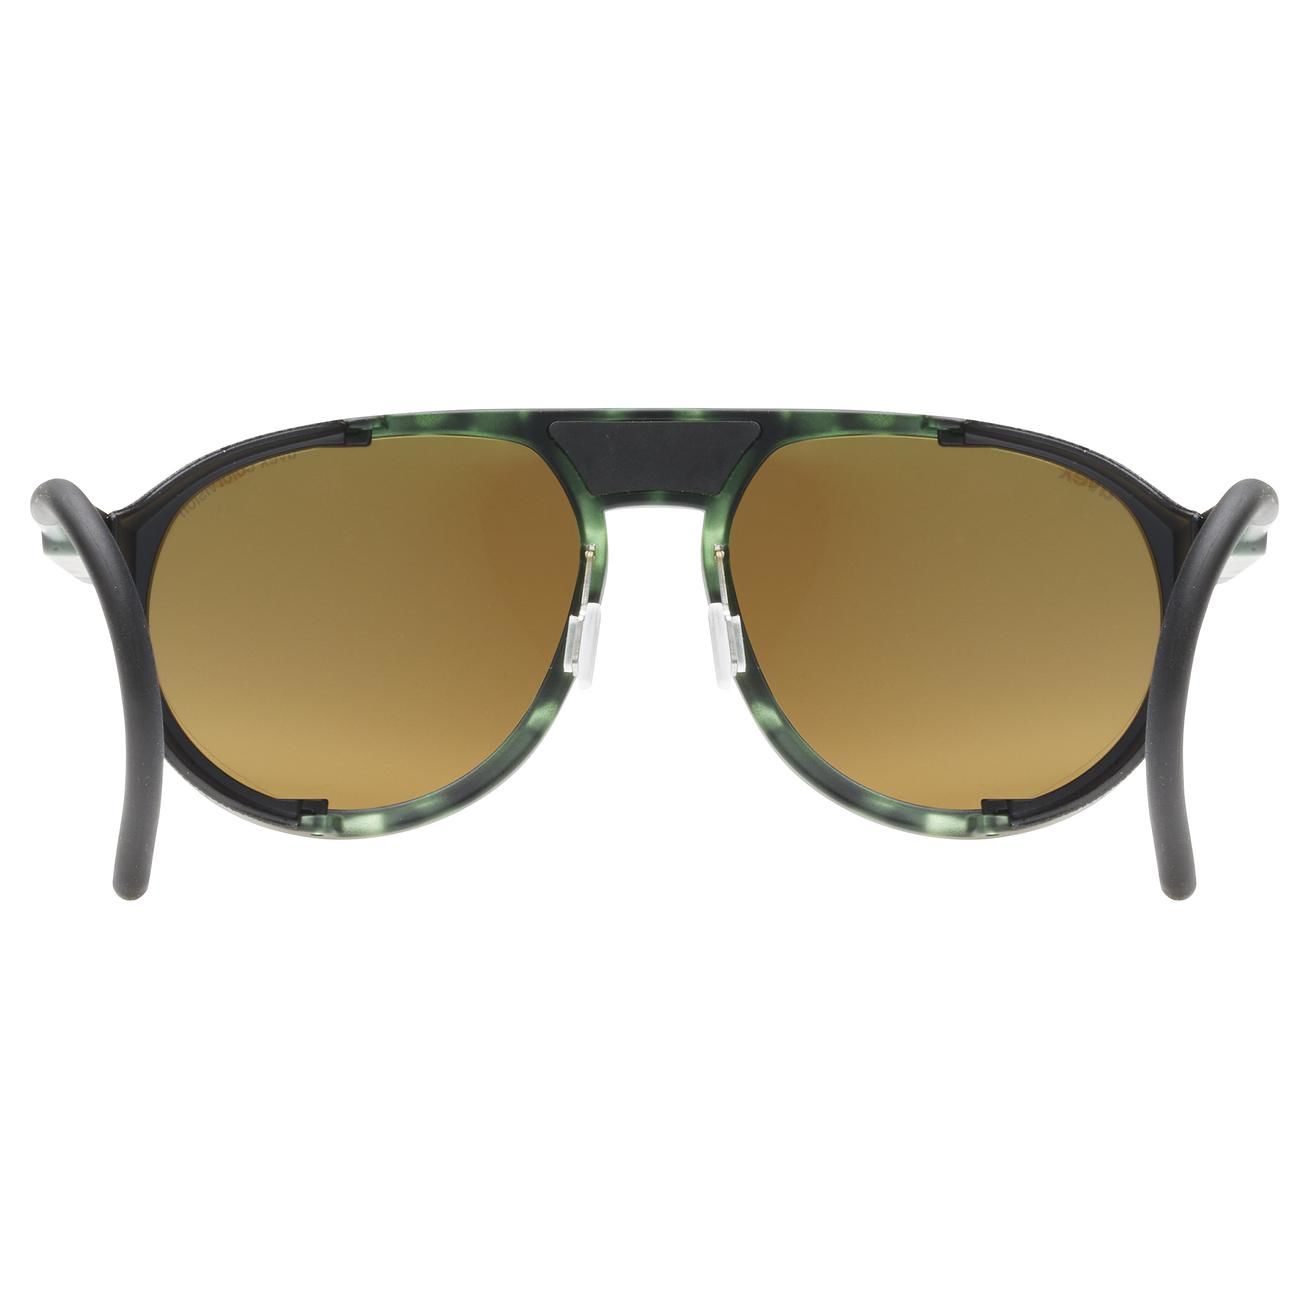 slnečné okuliare uvex mtn classic CV green mat totroise s3